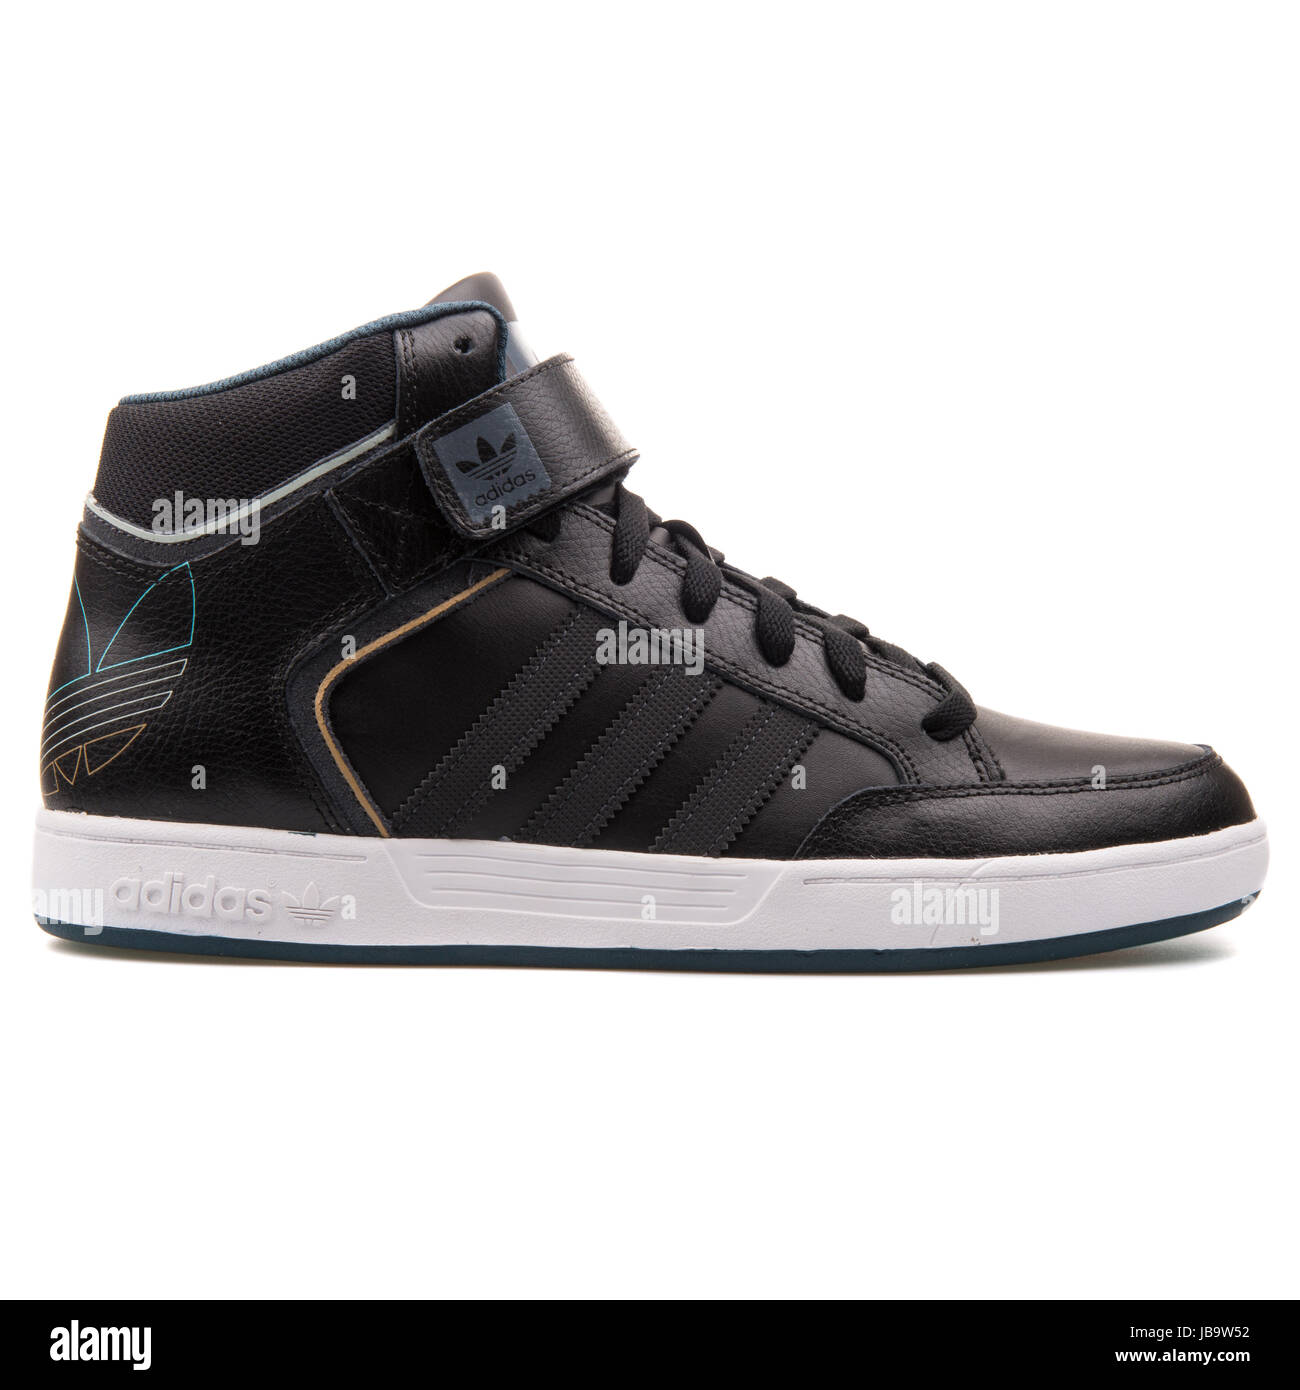 Adidas Varial mediados de cuero negro zapatillas de baloncesto masculino -  D68664 Fotografía de stock - Alamy